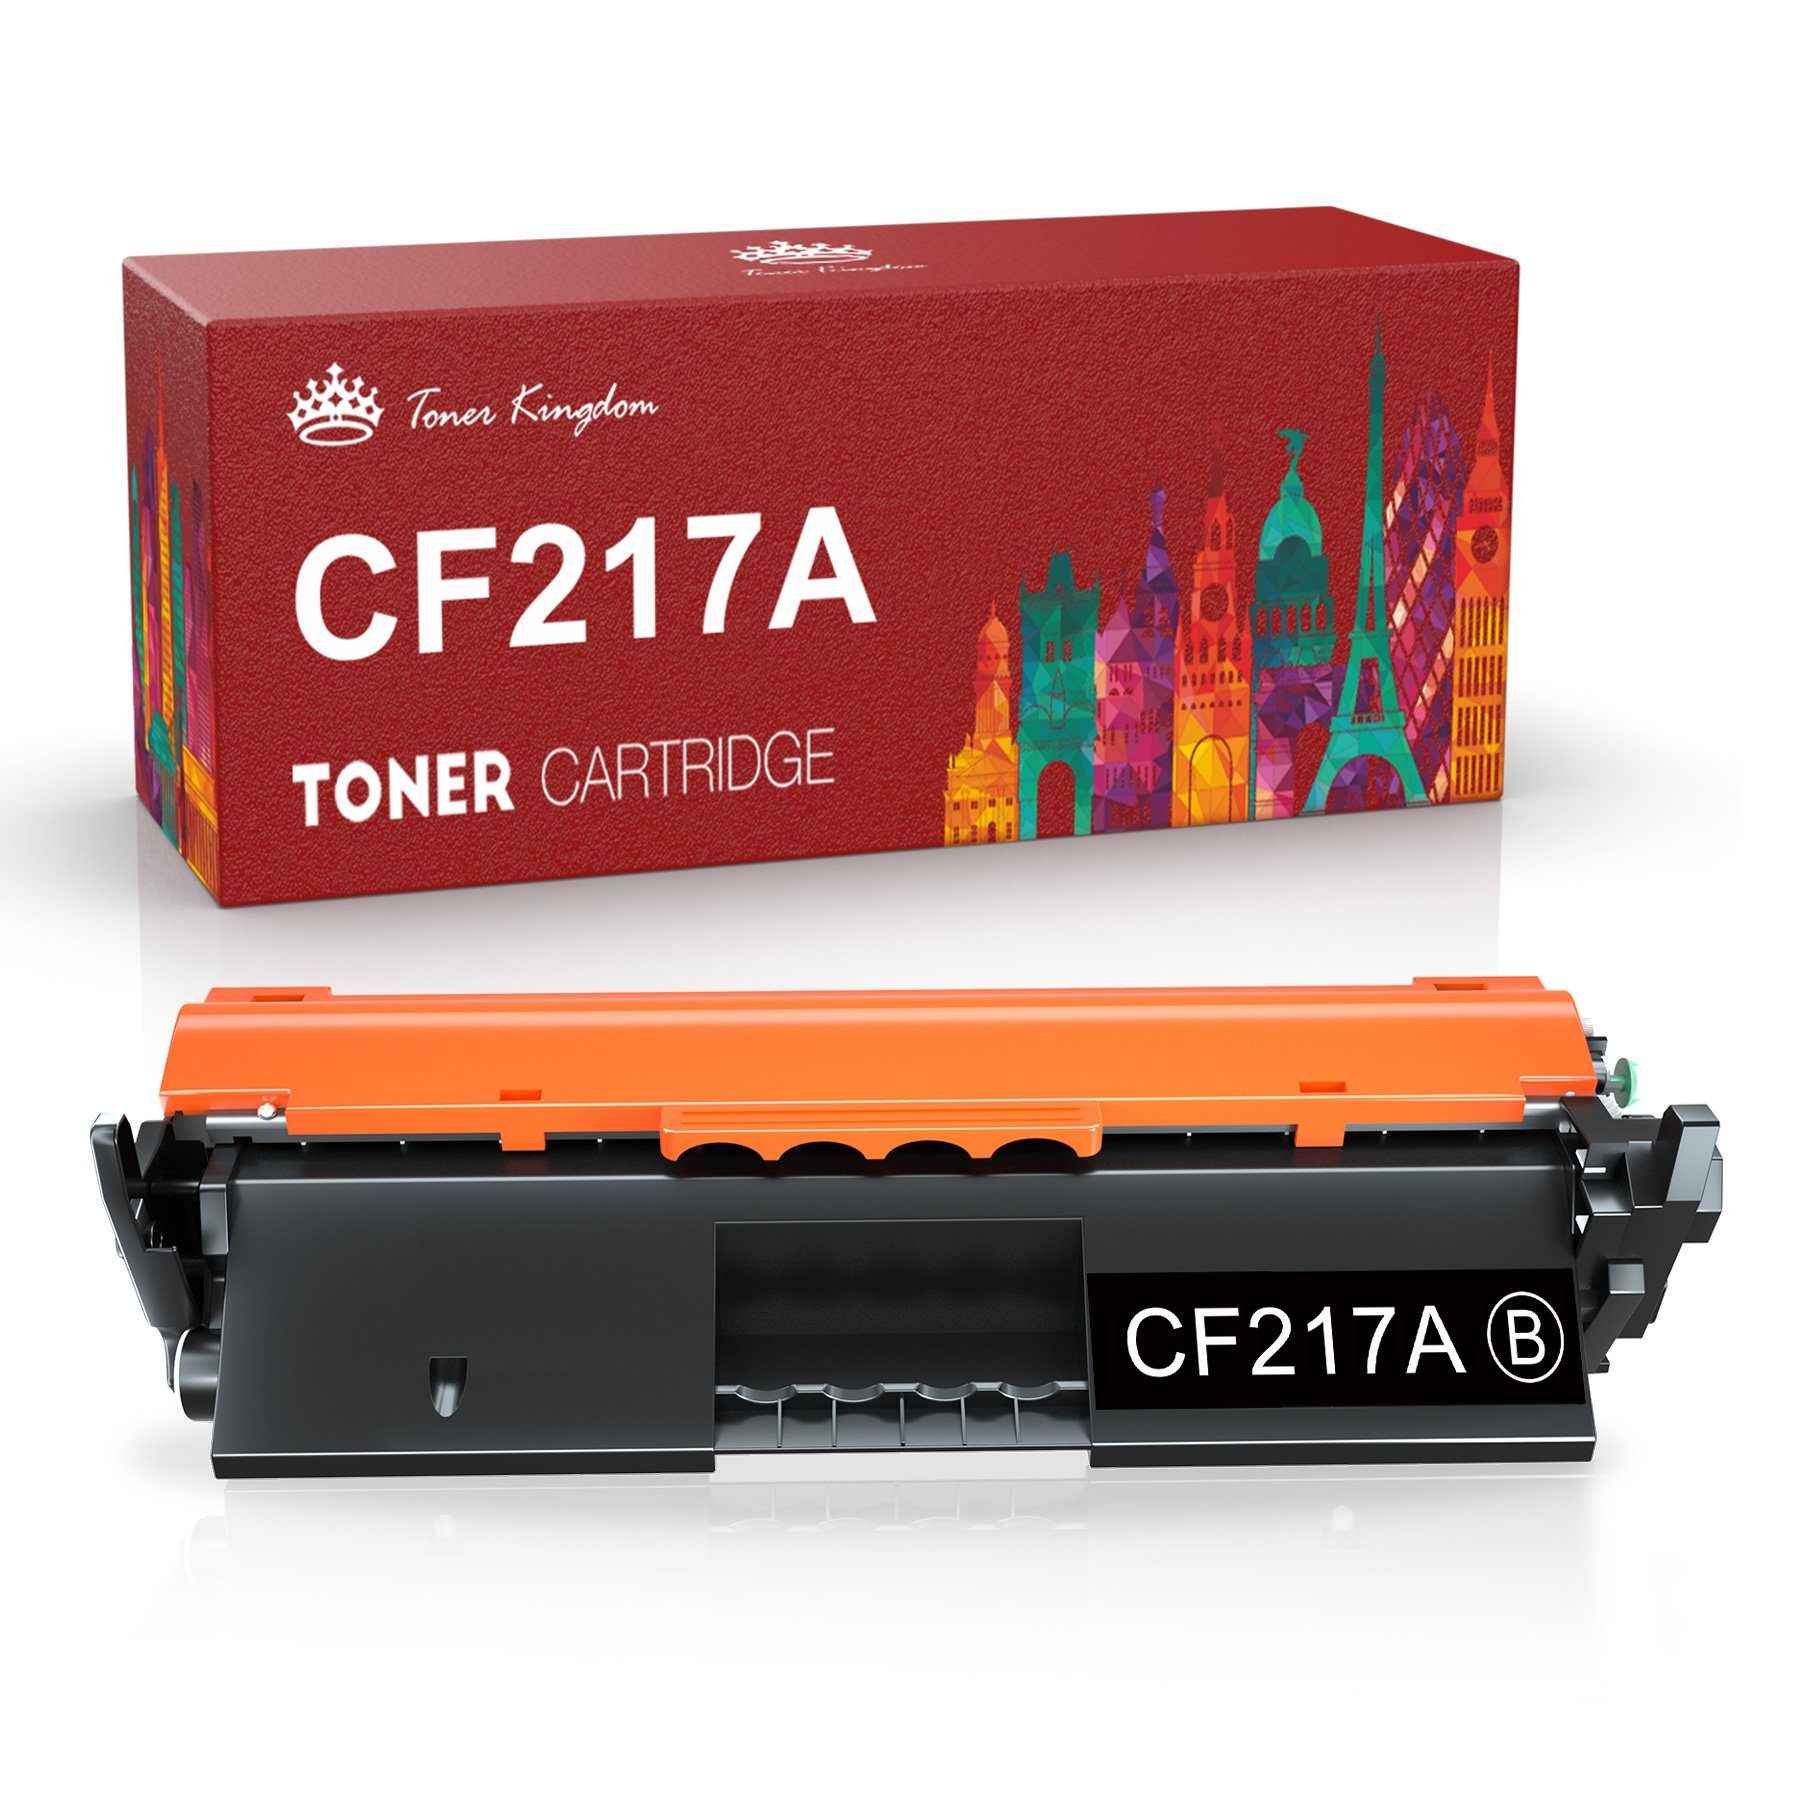 Toner Kingdom Tonerpatrone für HP CF217A 17A M102W M130FW M130NW M132SFNW, (LaserJet Pro M130fn M130a)